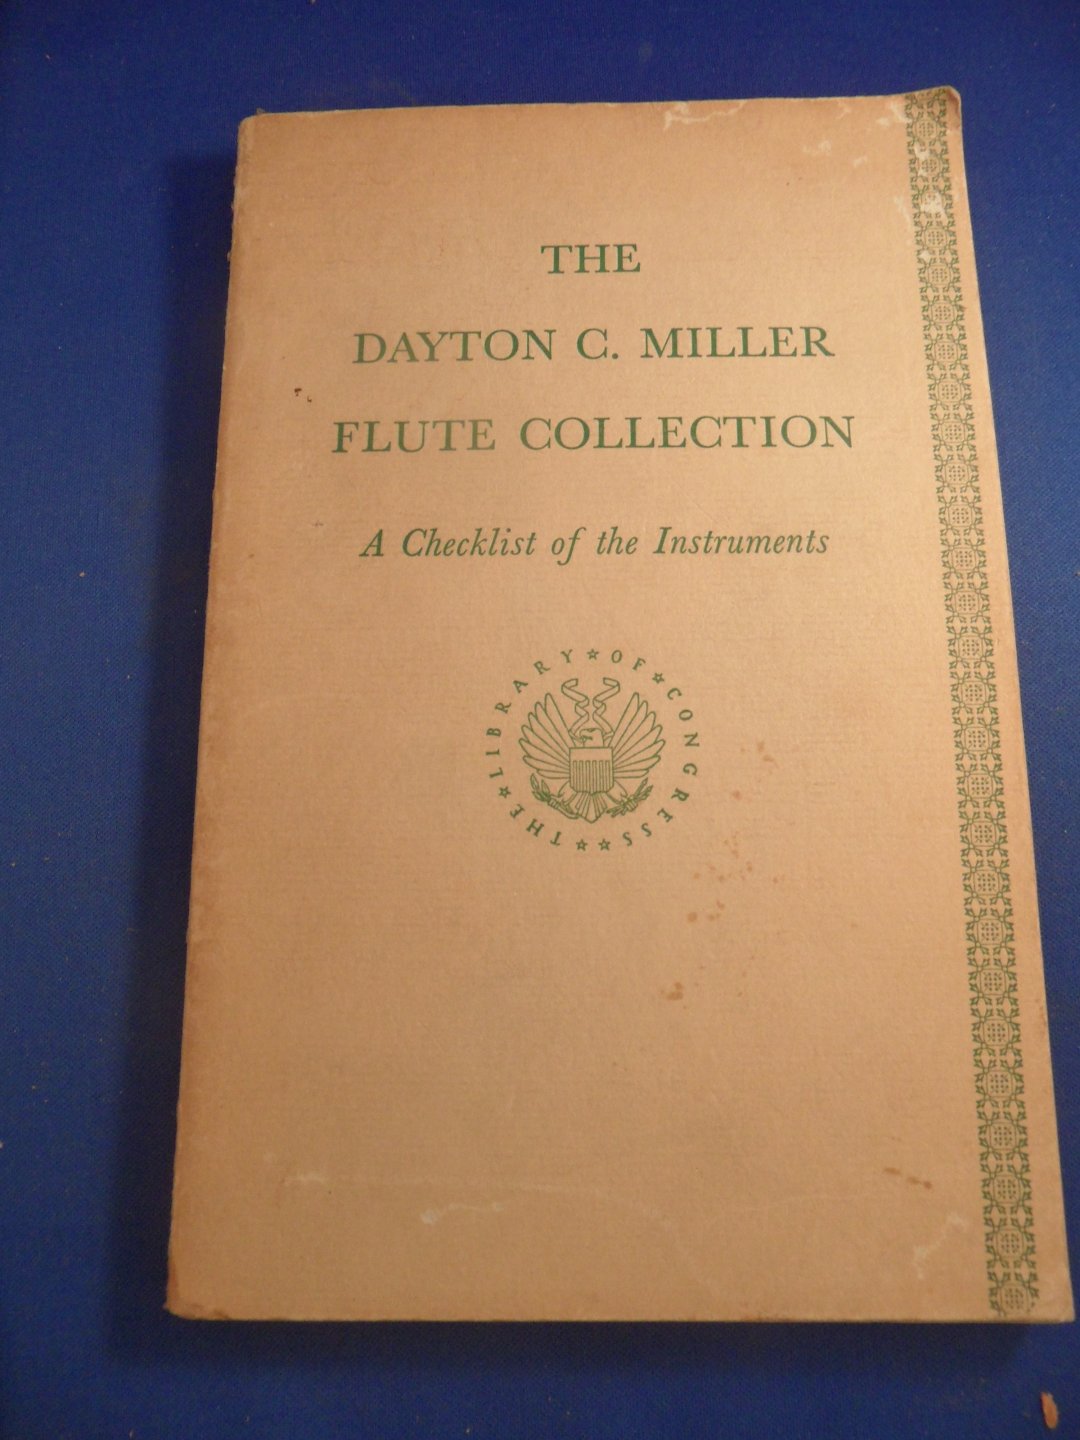 Gilliam, Laura and Lichtenwanger, William - the dayton c. miller flute collection